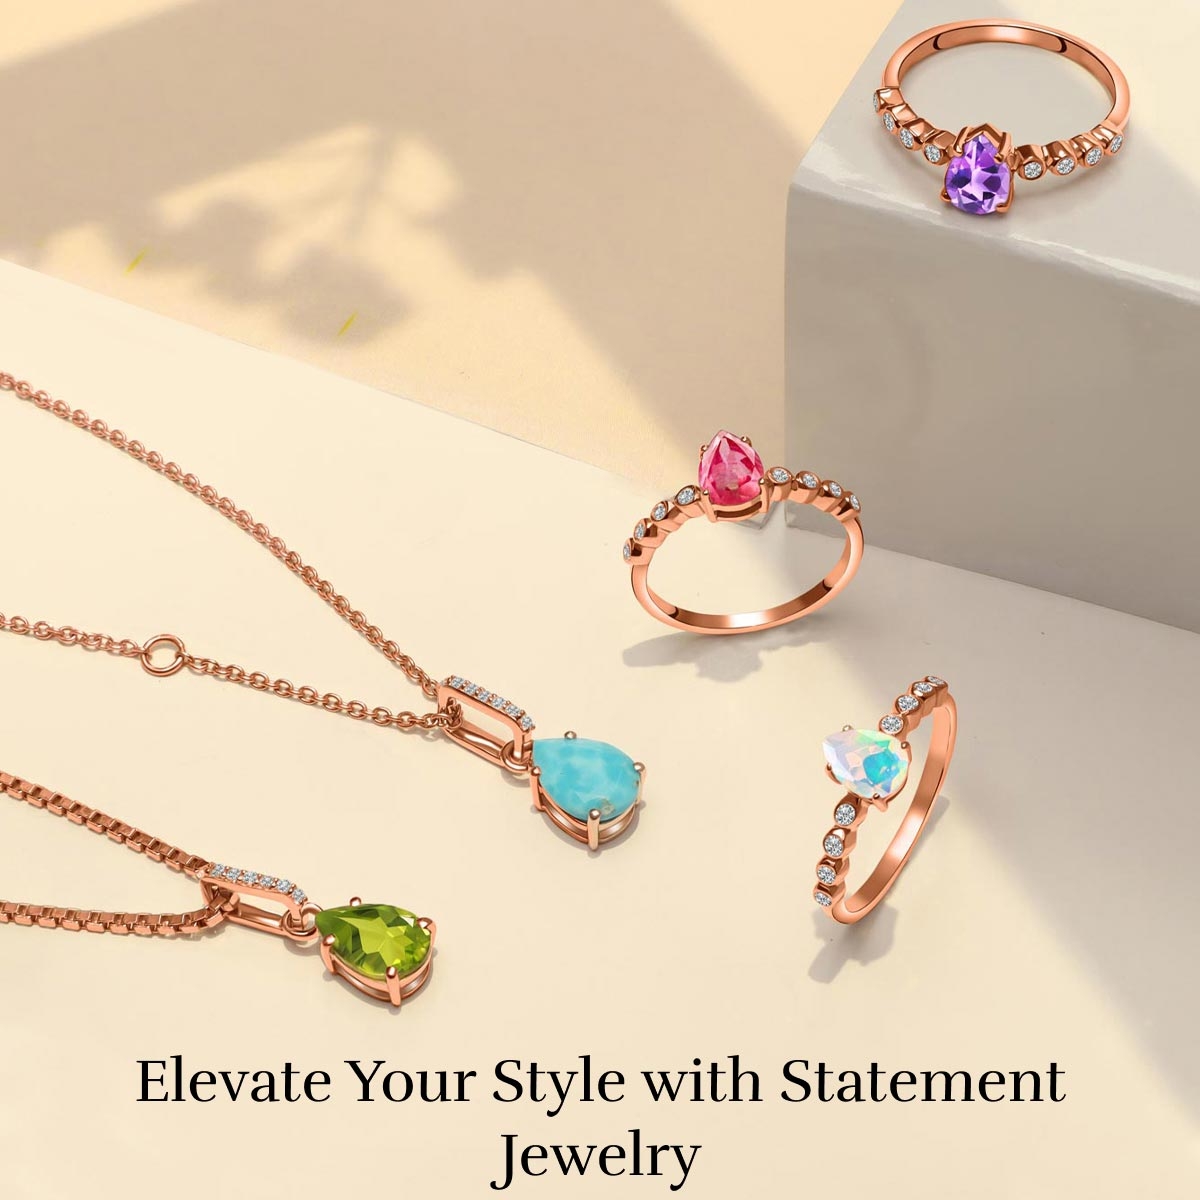 How to Wear Statement Jewelry